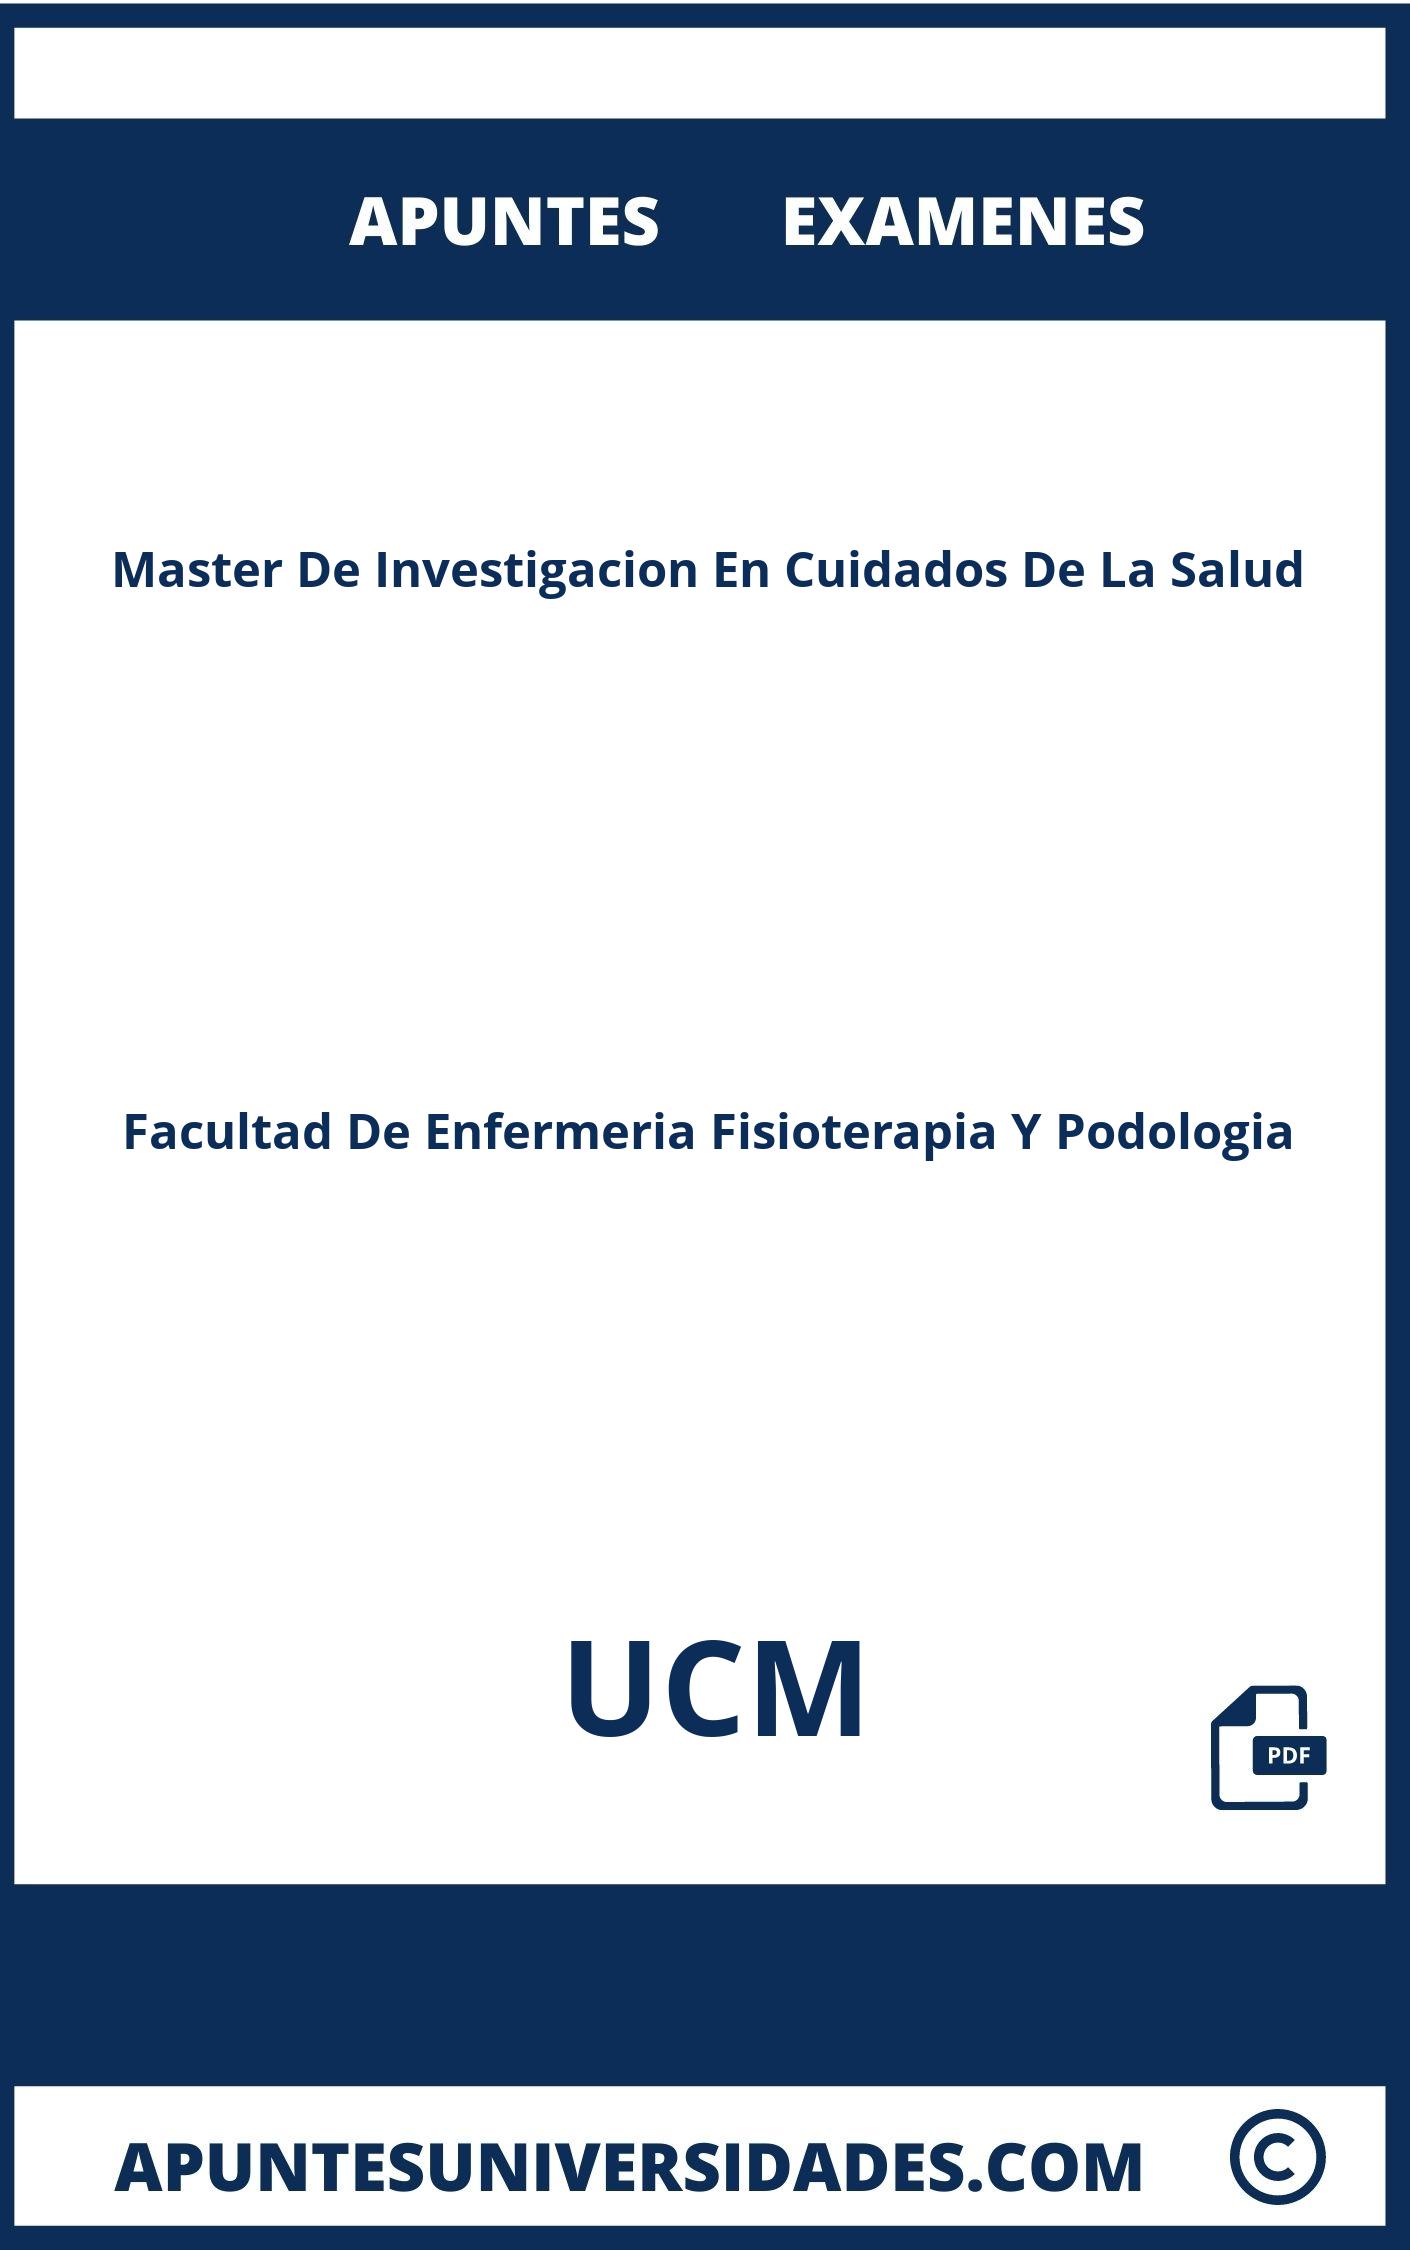 Examenes Master De Investigacion En Cuidados De La Salud UCM y Apuntes